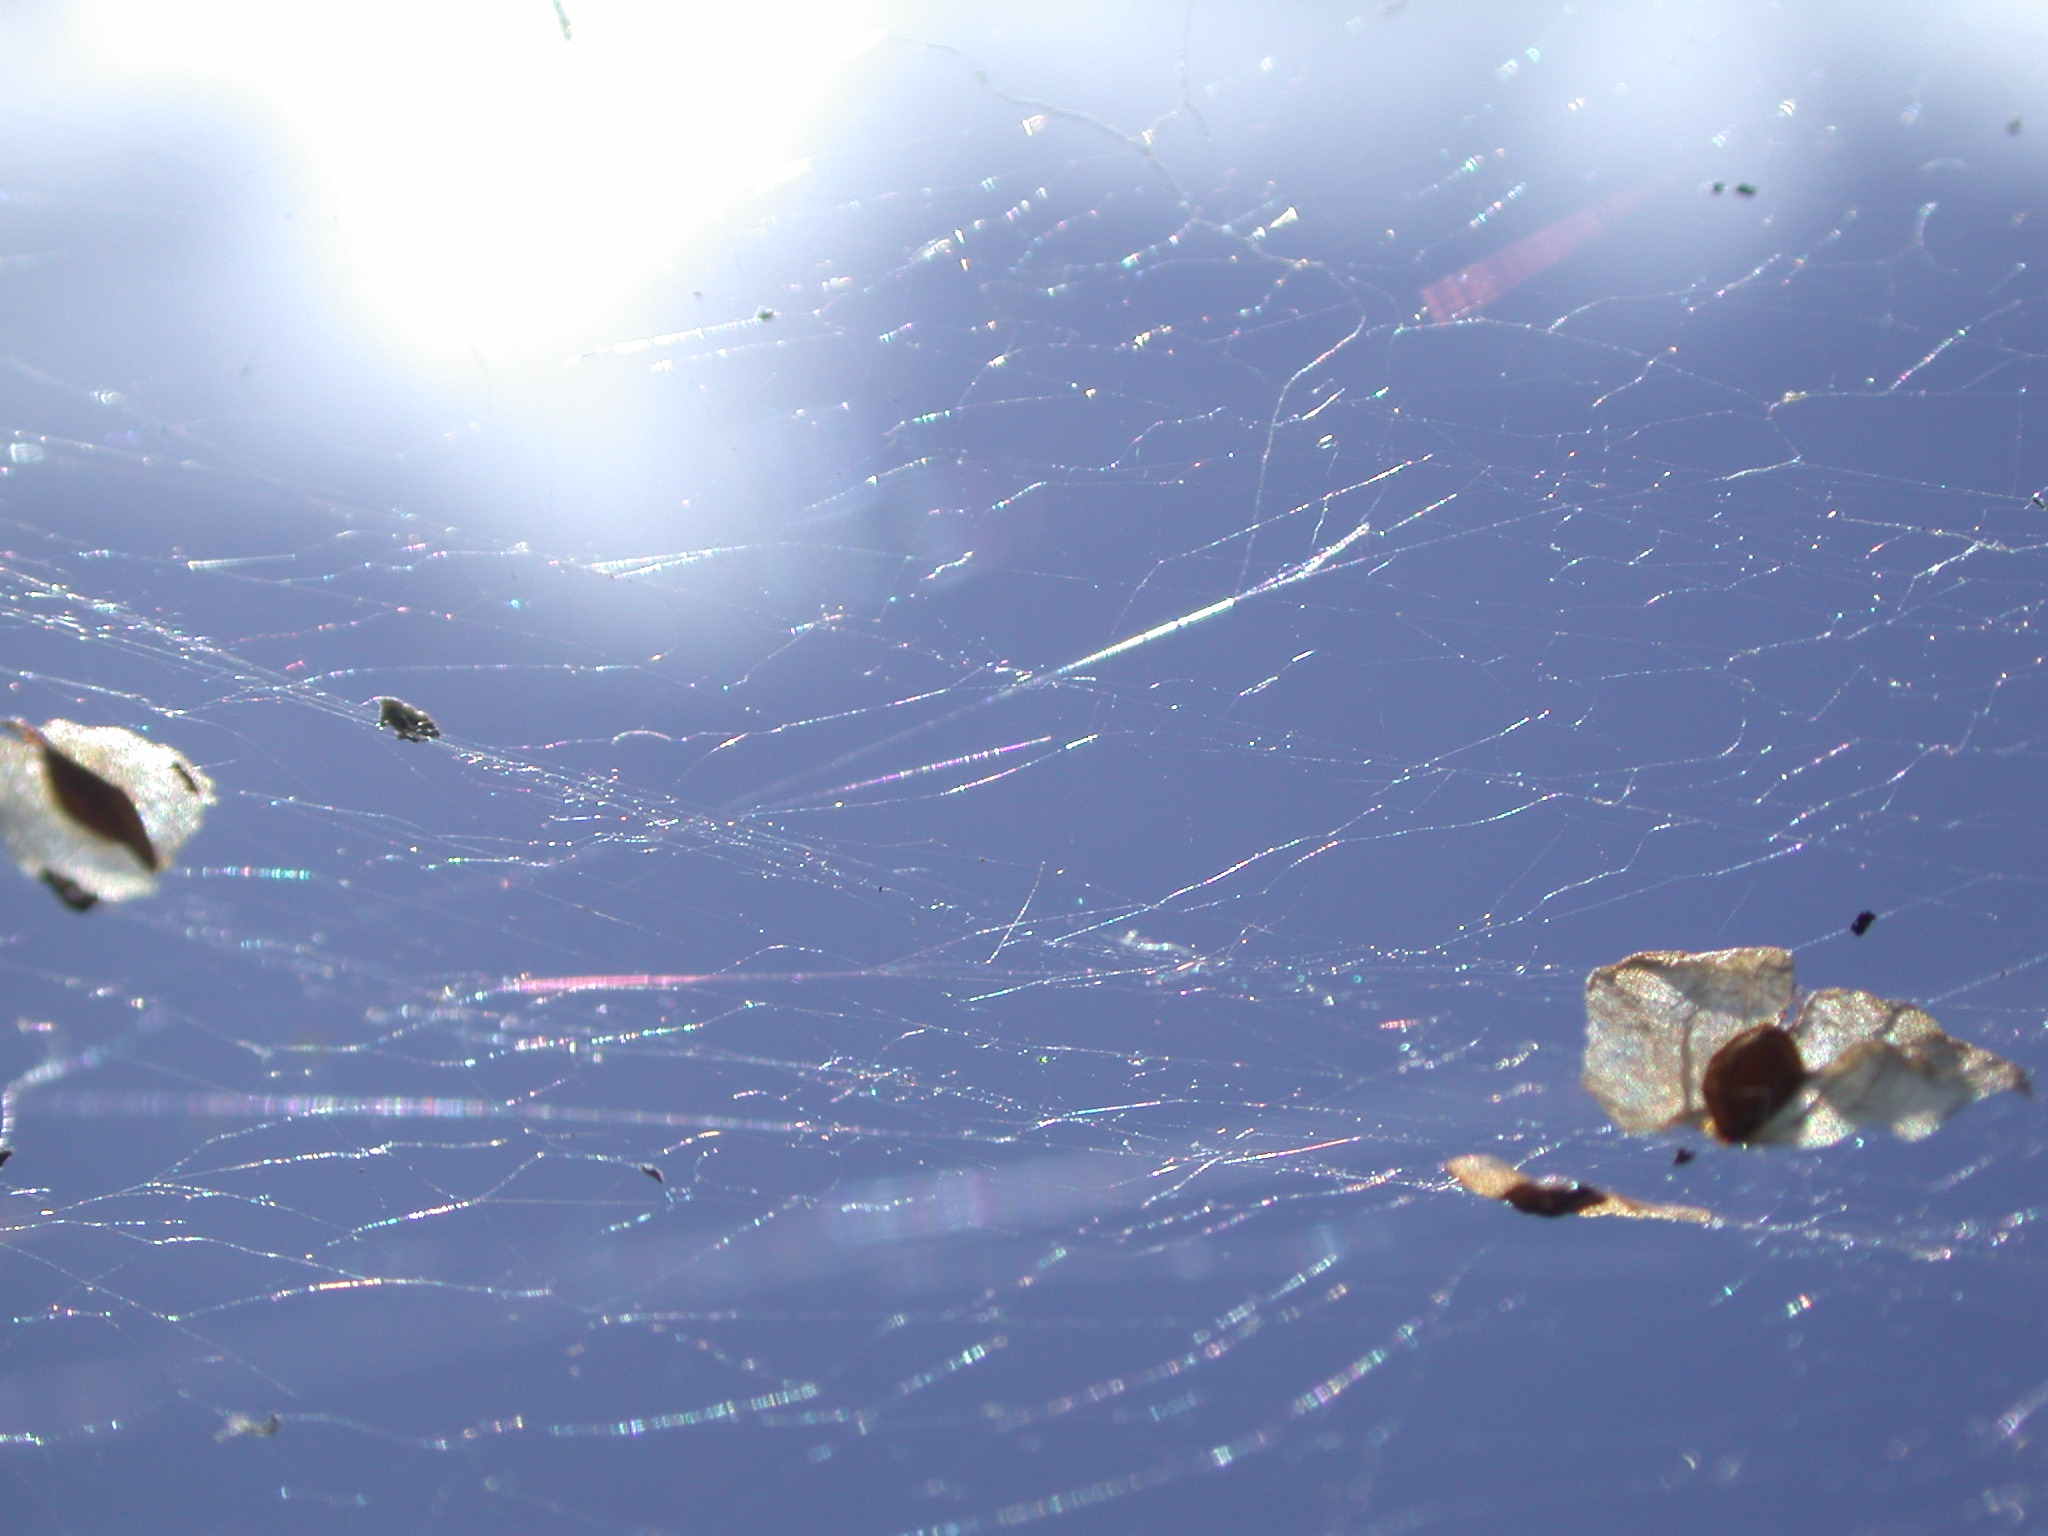 janneke spider spider's web webbing threads sticky